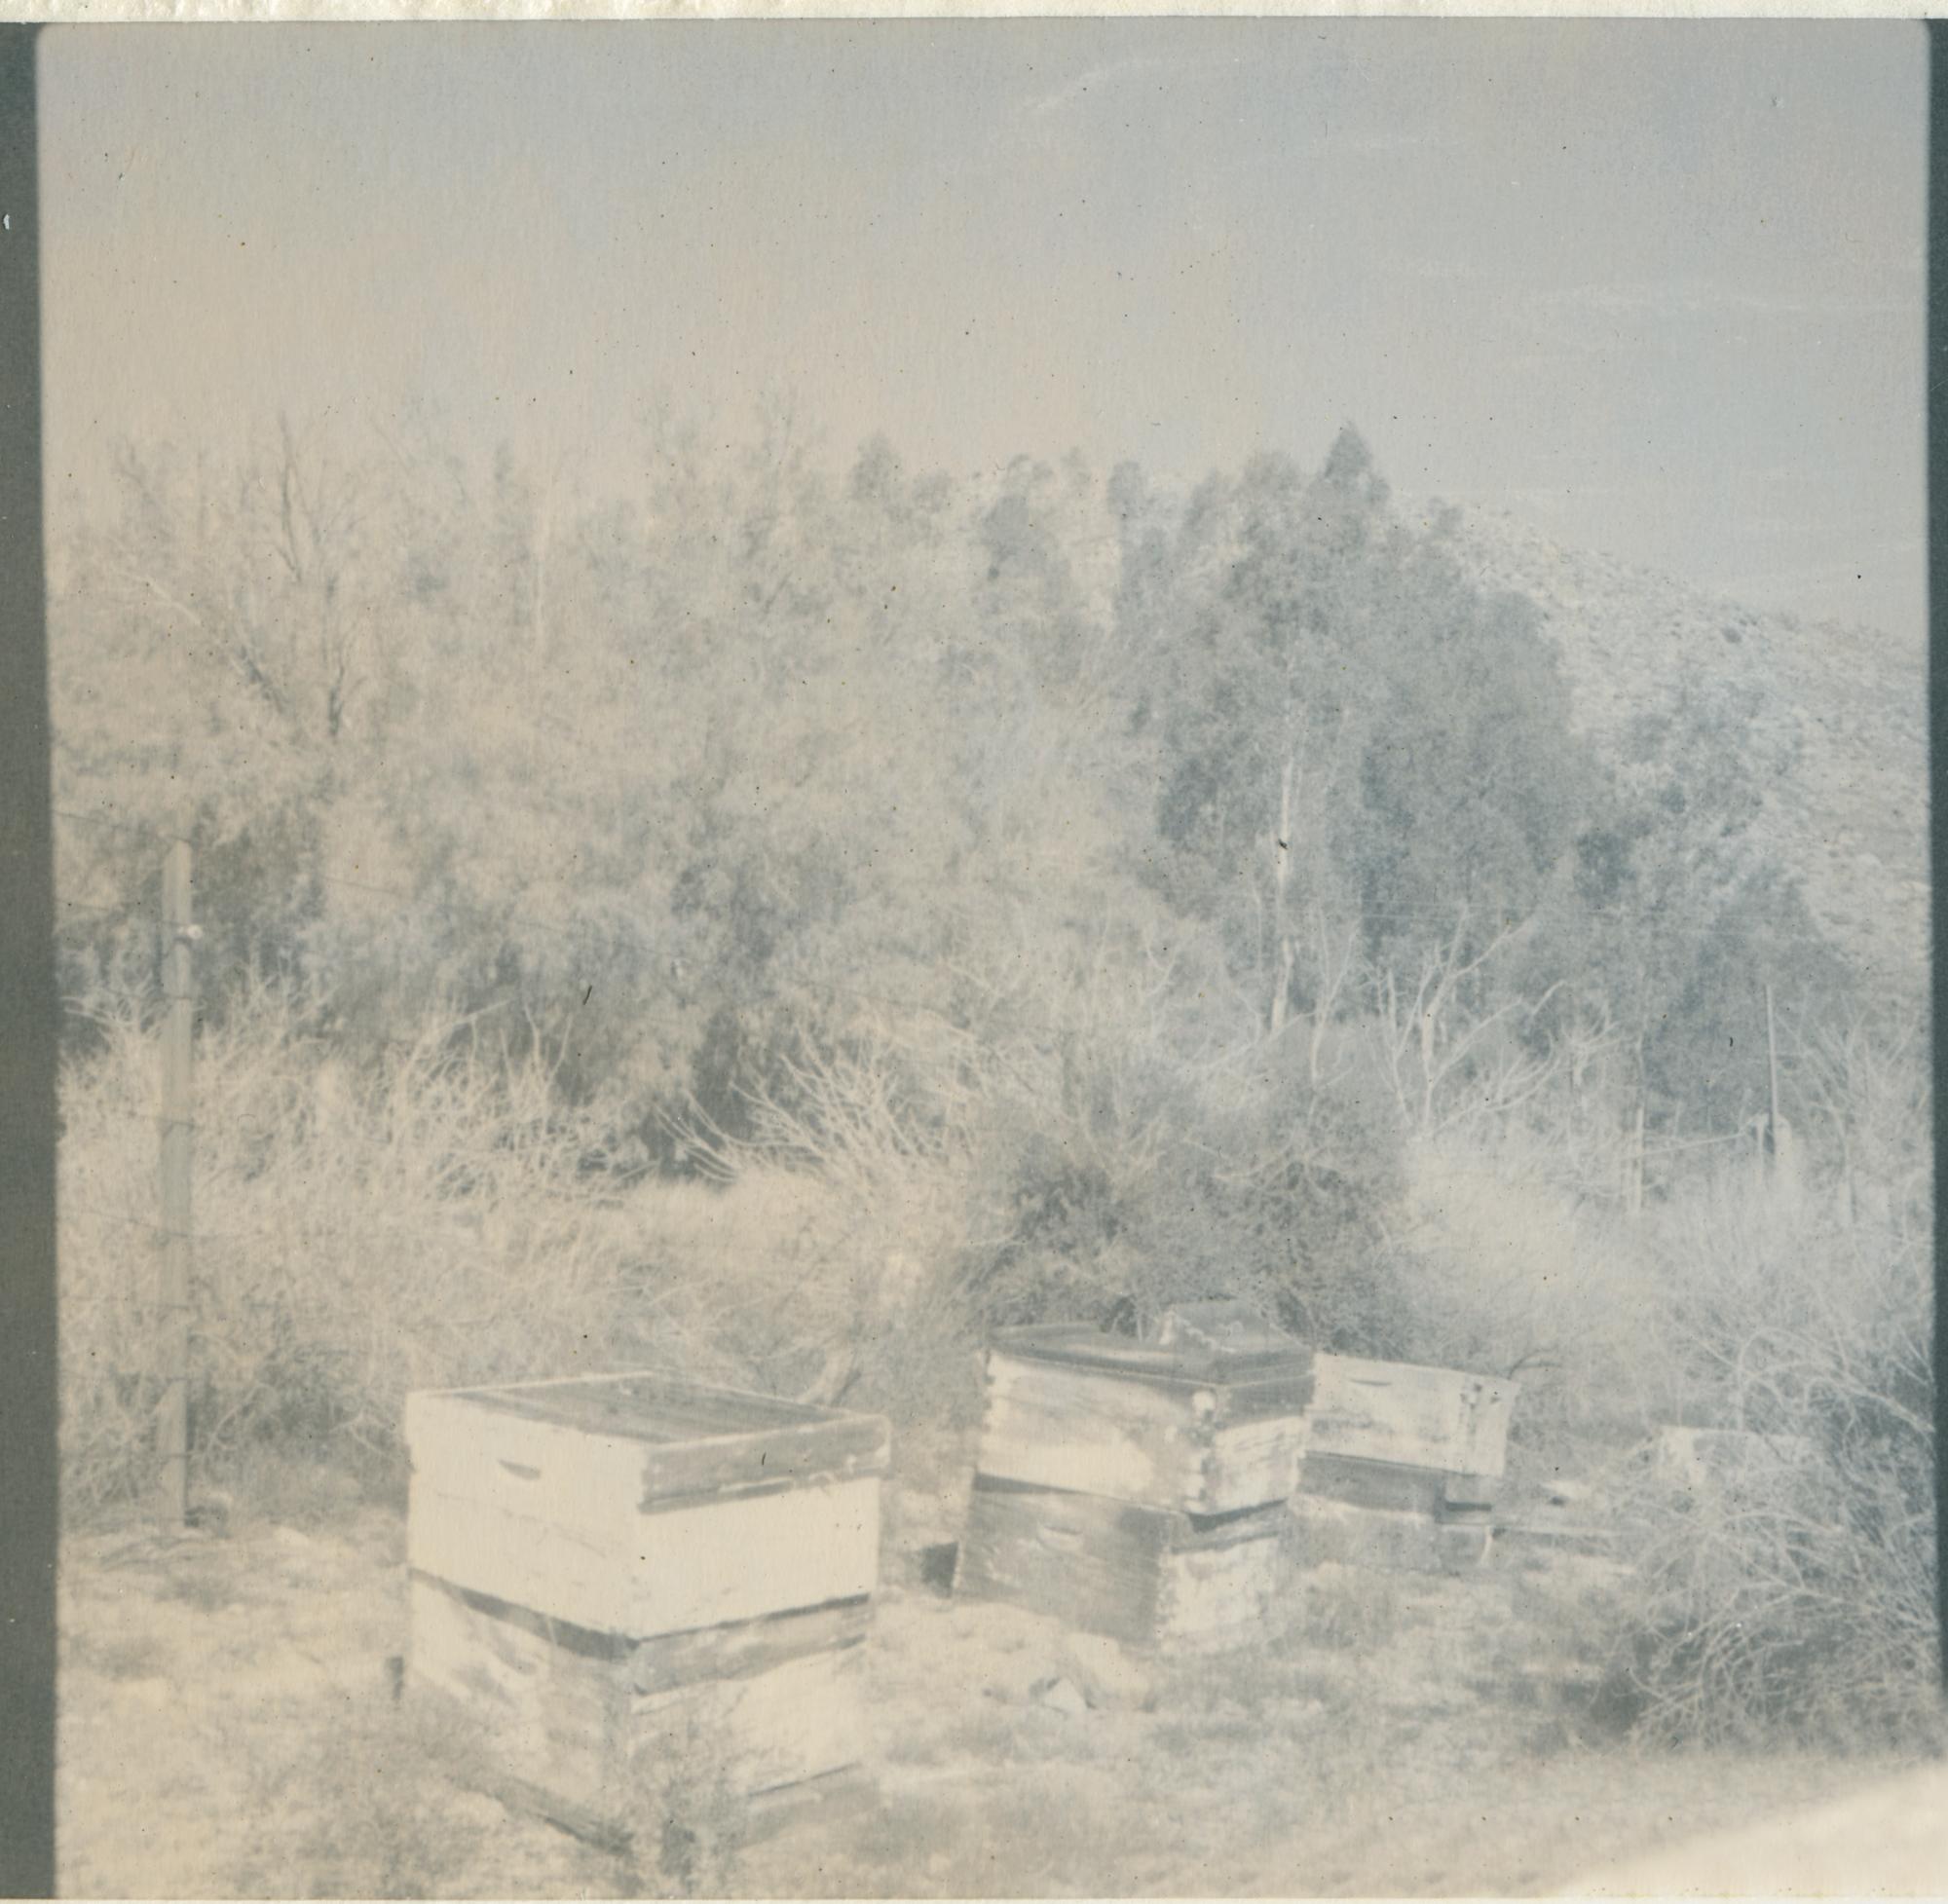 Boîtes à abeilles désertées (Californie Dreaming) - Contemporain, XXIe siècle, Polaroid